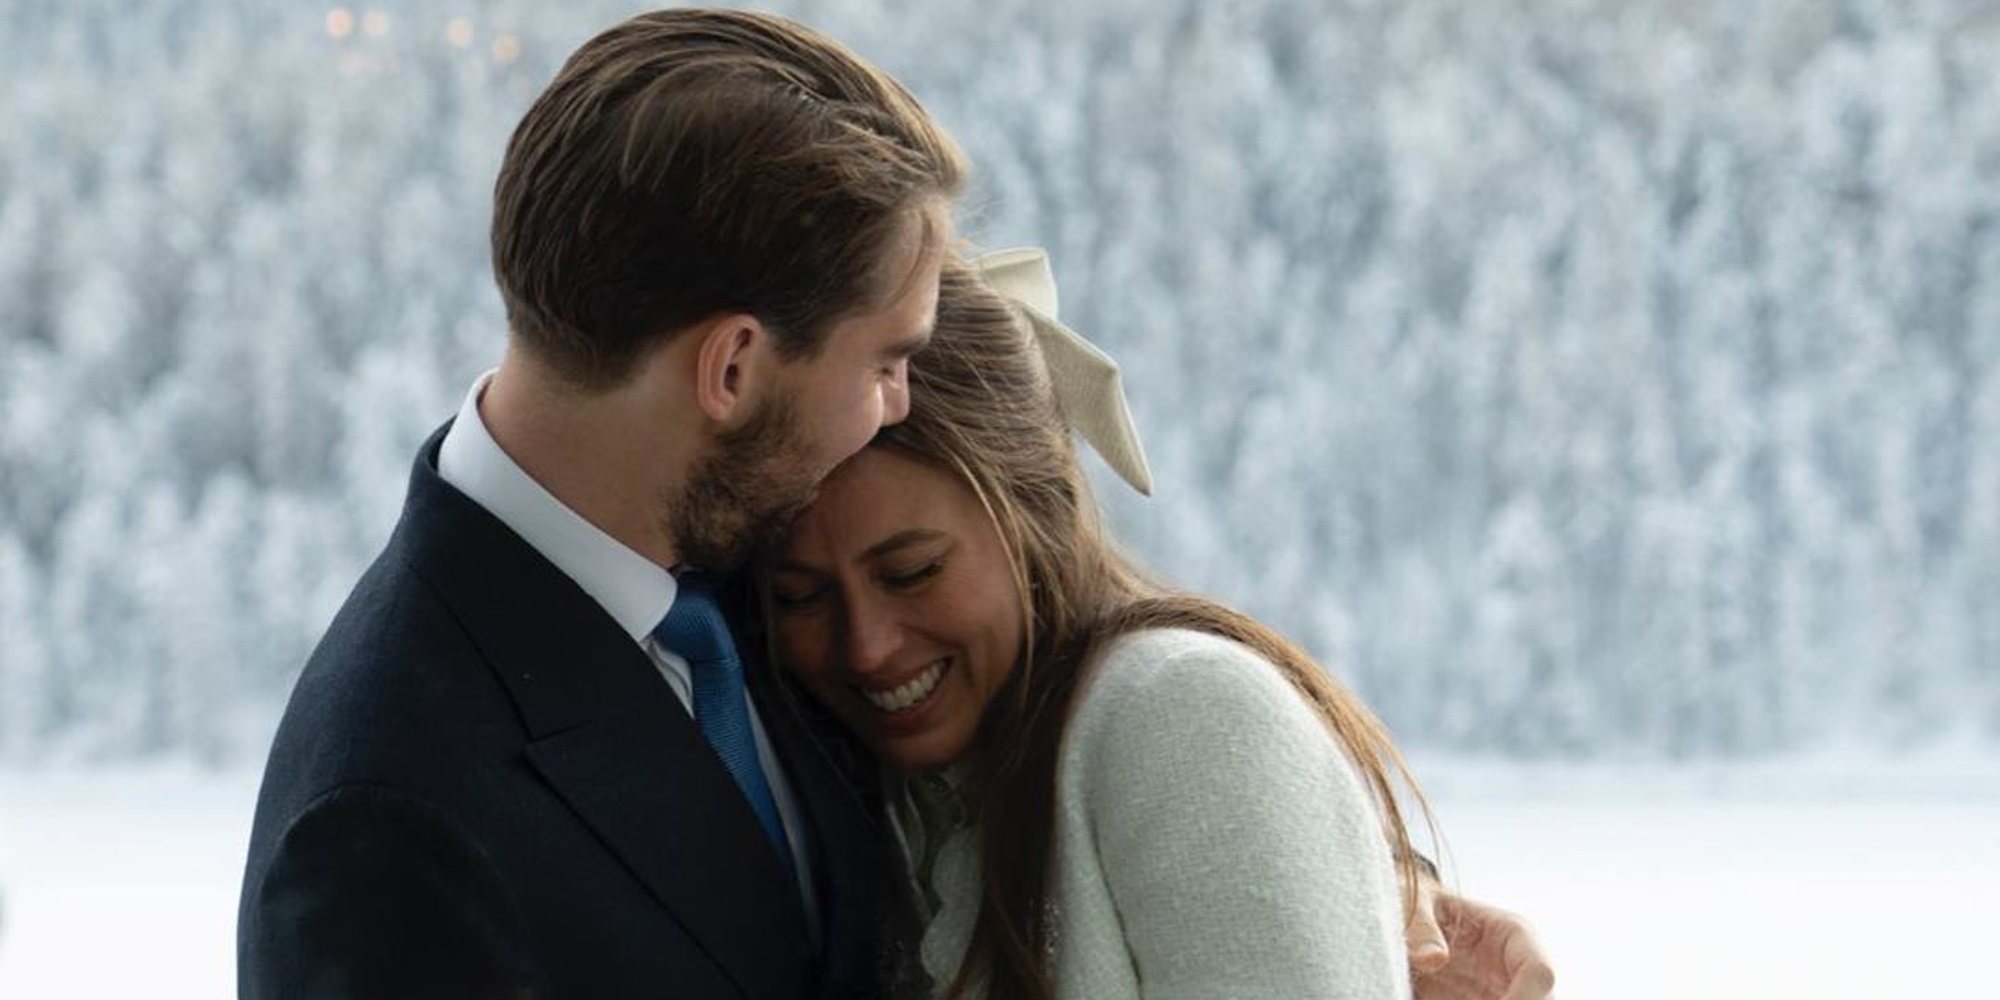 Nina Flohr deja claro que habrá otra boda real con Felipe de Grecia